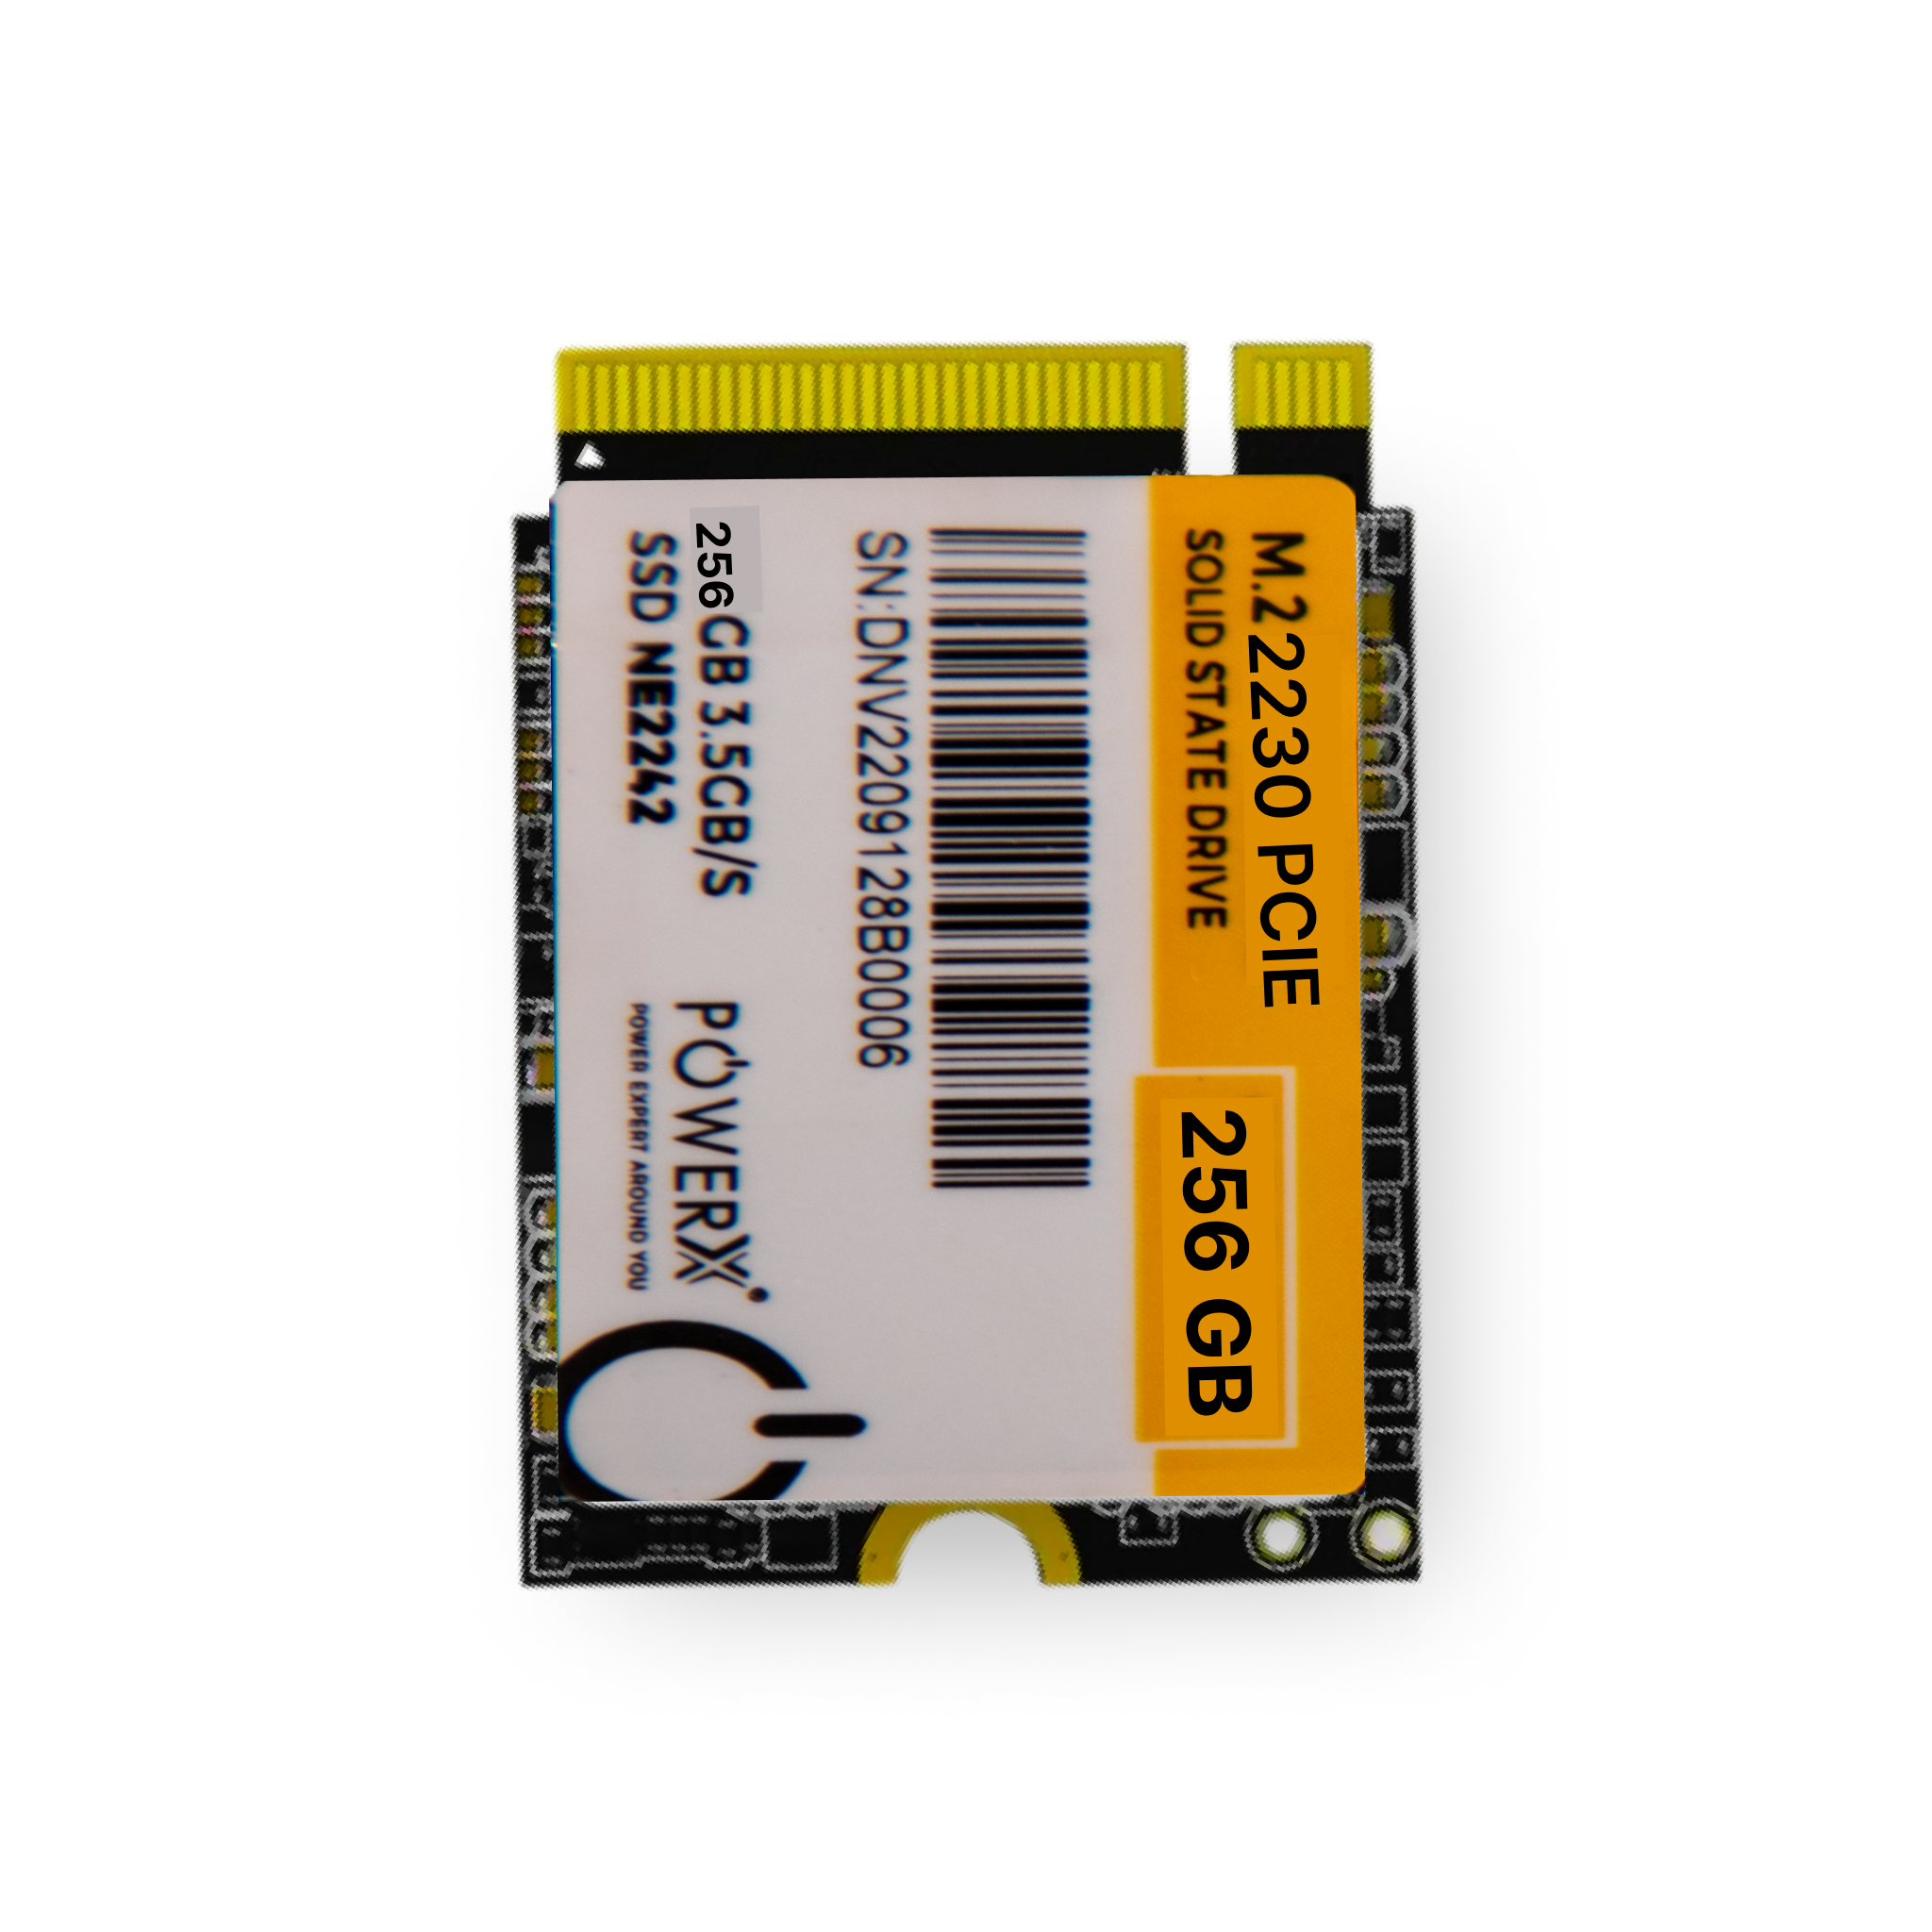 M.2 PCIE NVMe 2230 - 256GB